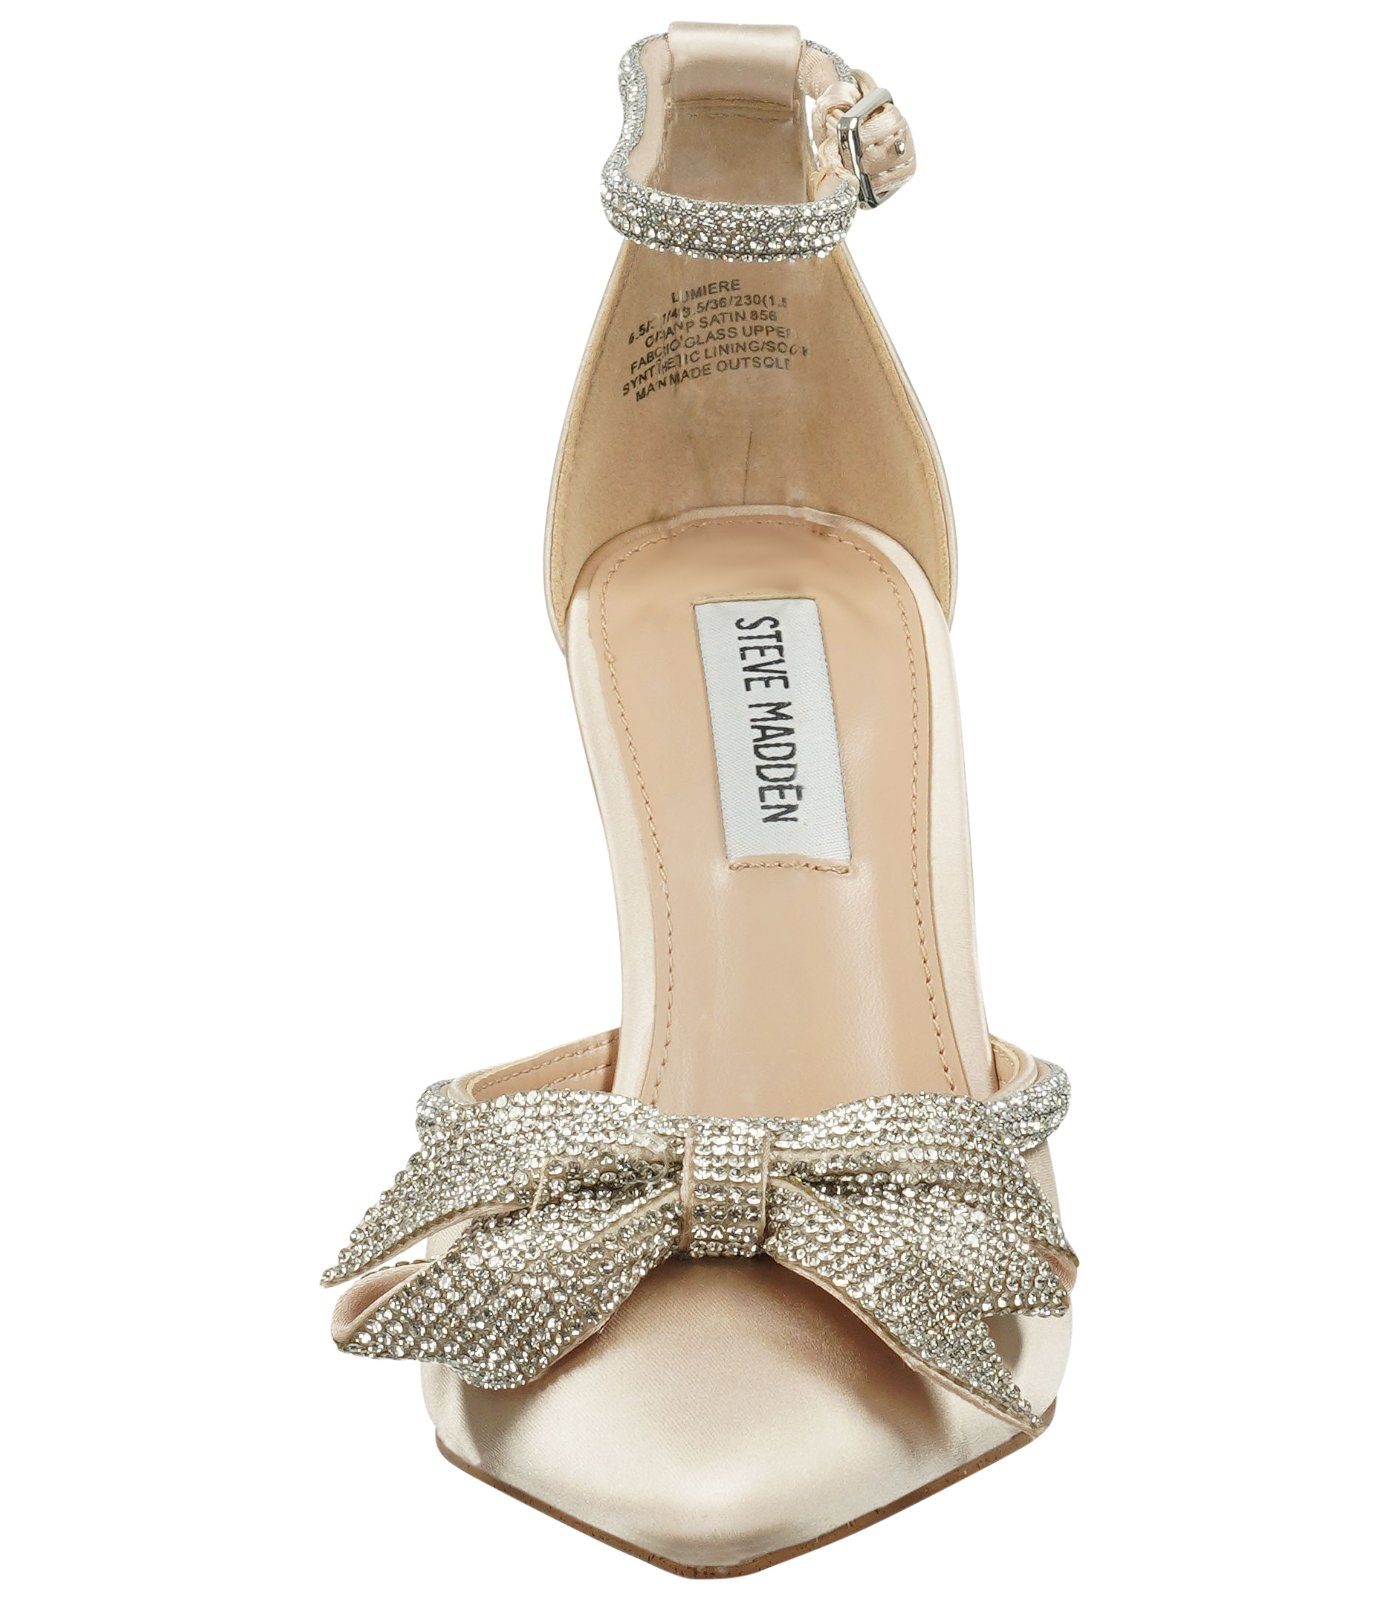 Textil Champagner High-Heel-Sandalette STEVE MADDEN Sandalen